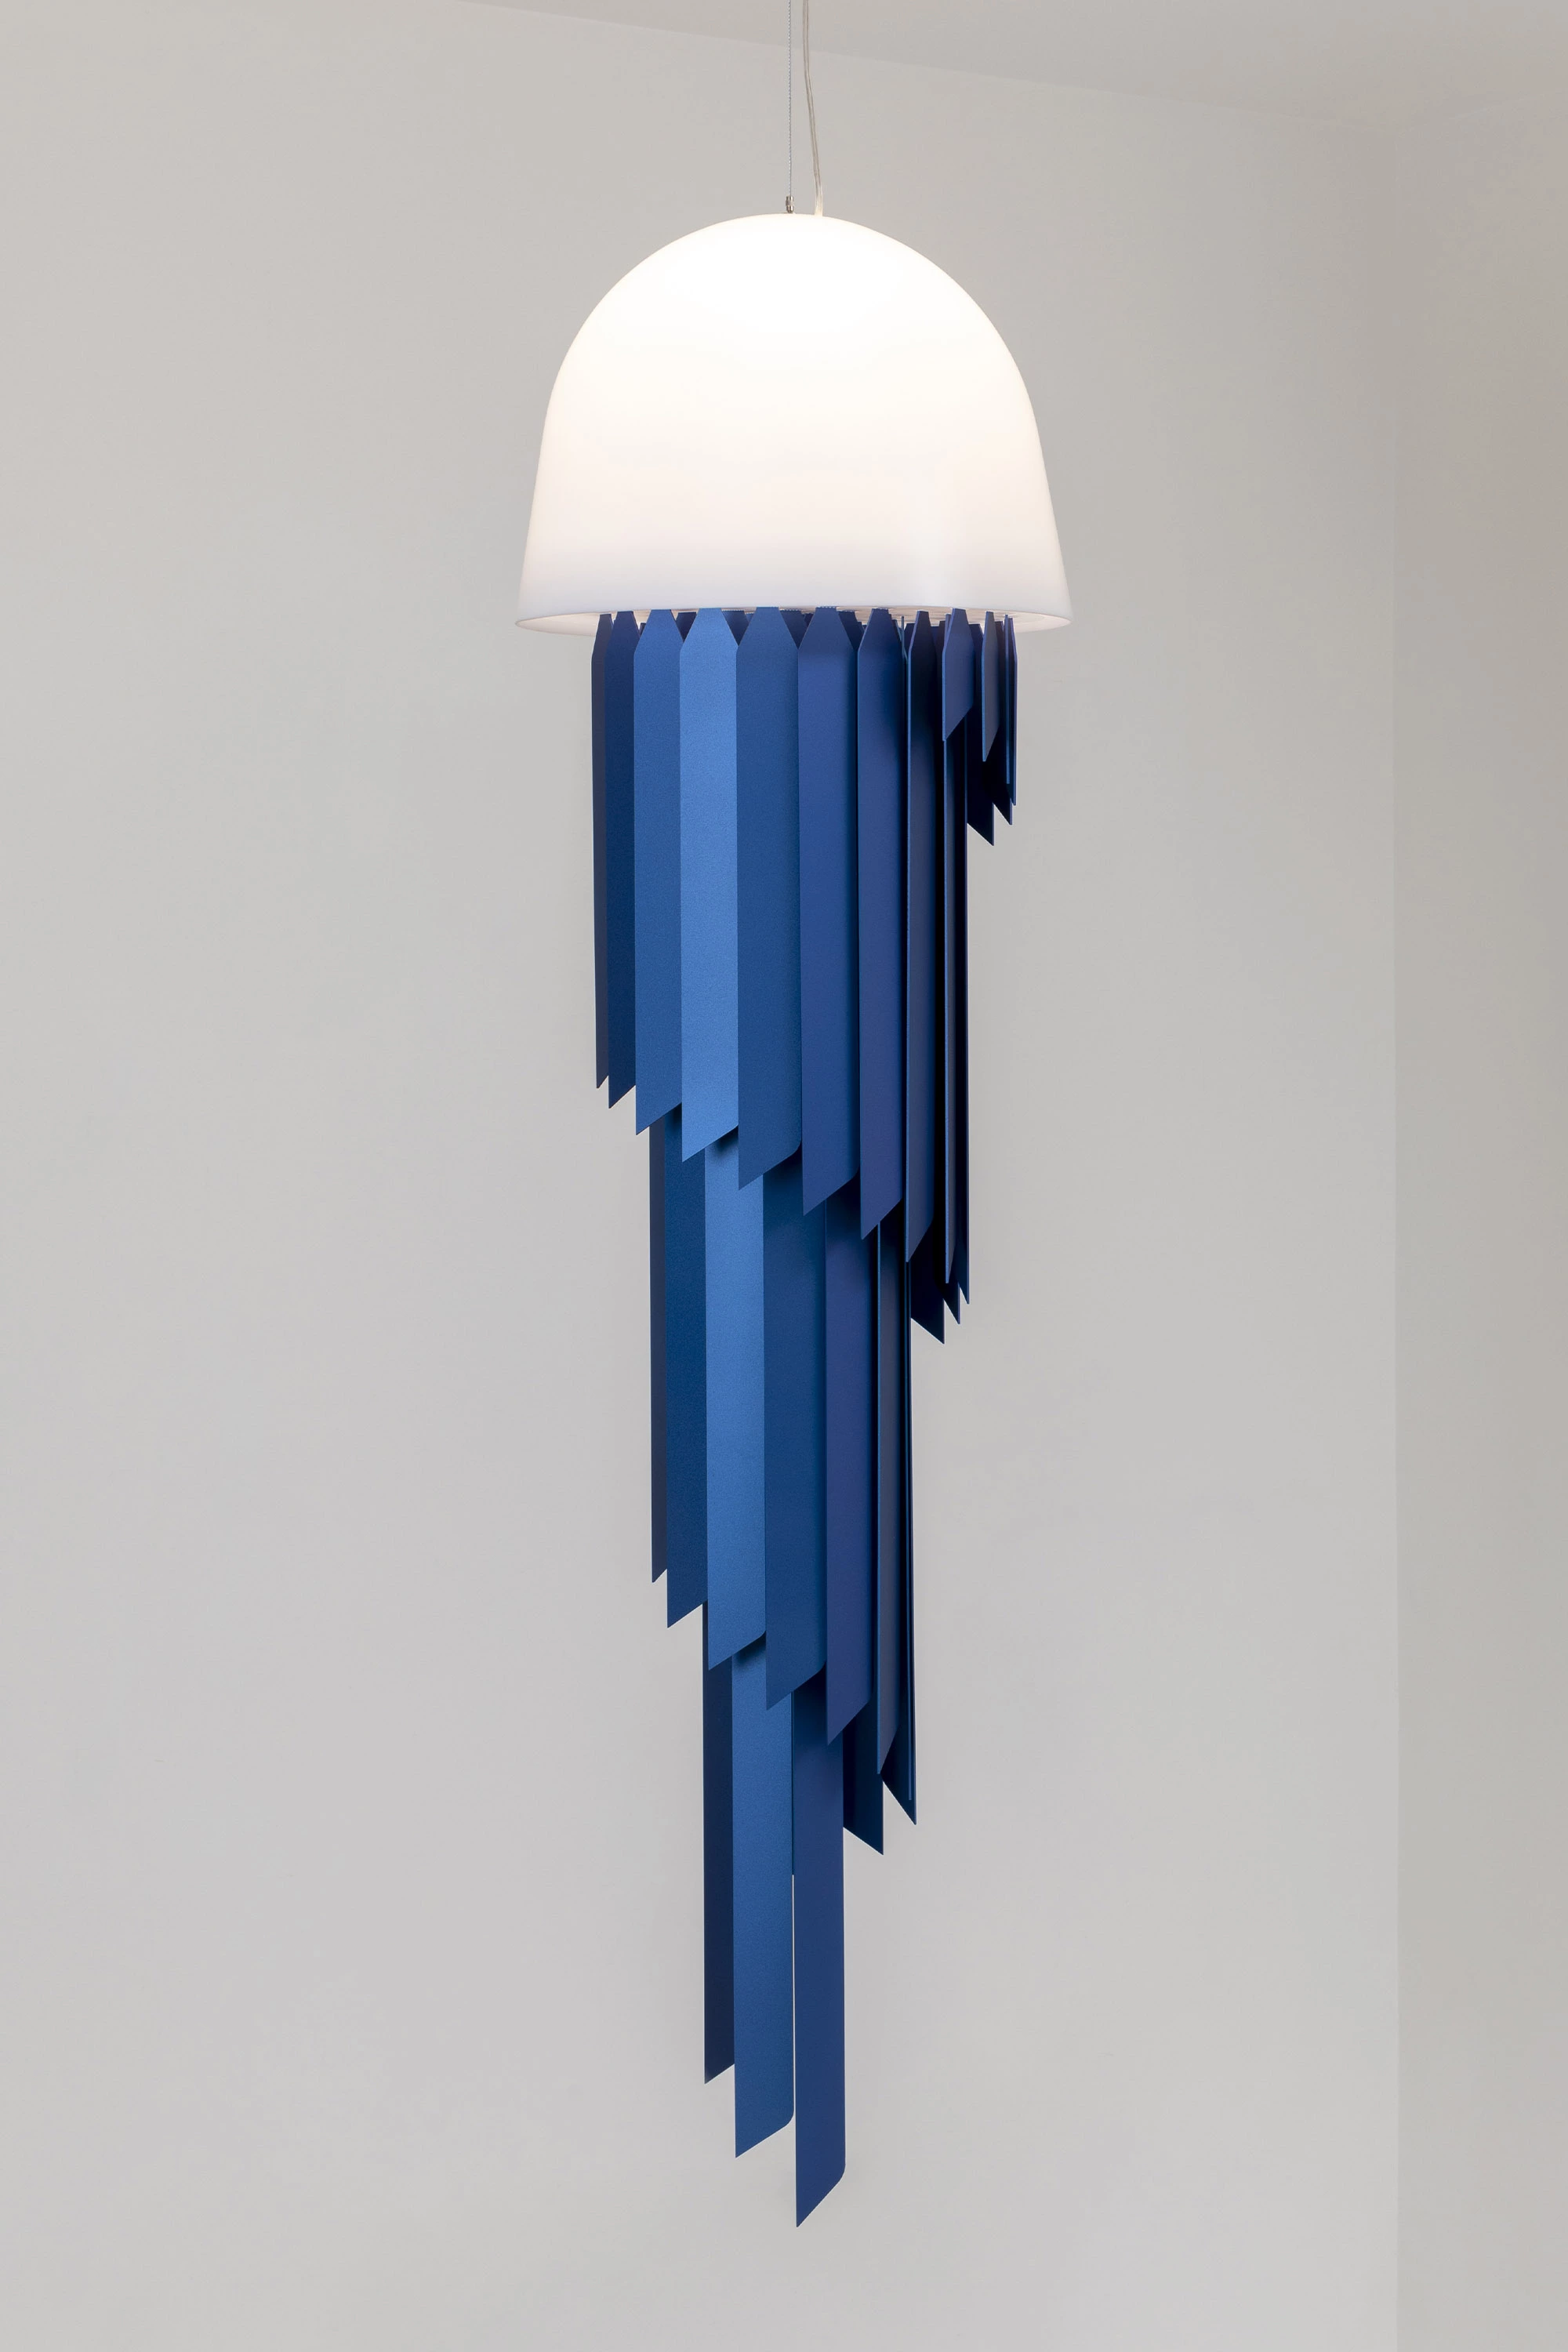 Jellyfish ceiling light - Jean-Baptiste Fastrez - Pendant light - Galerie kreo